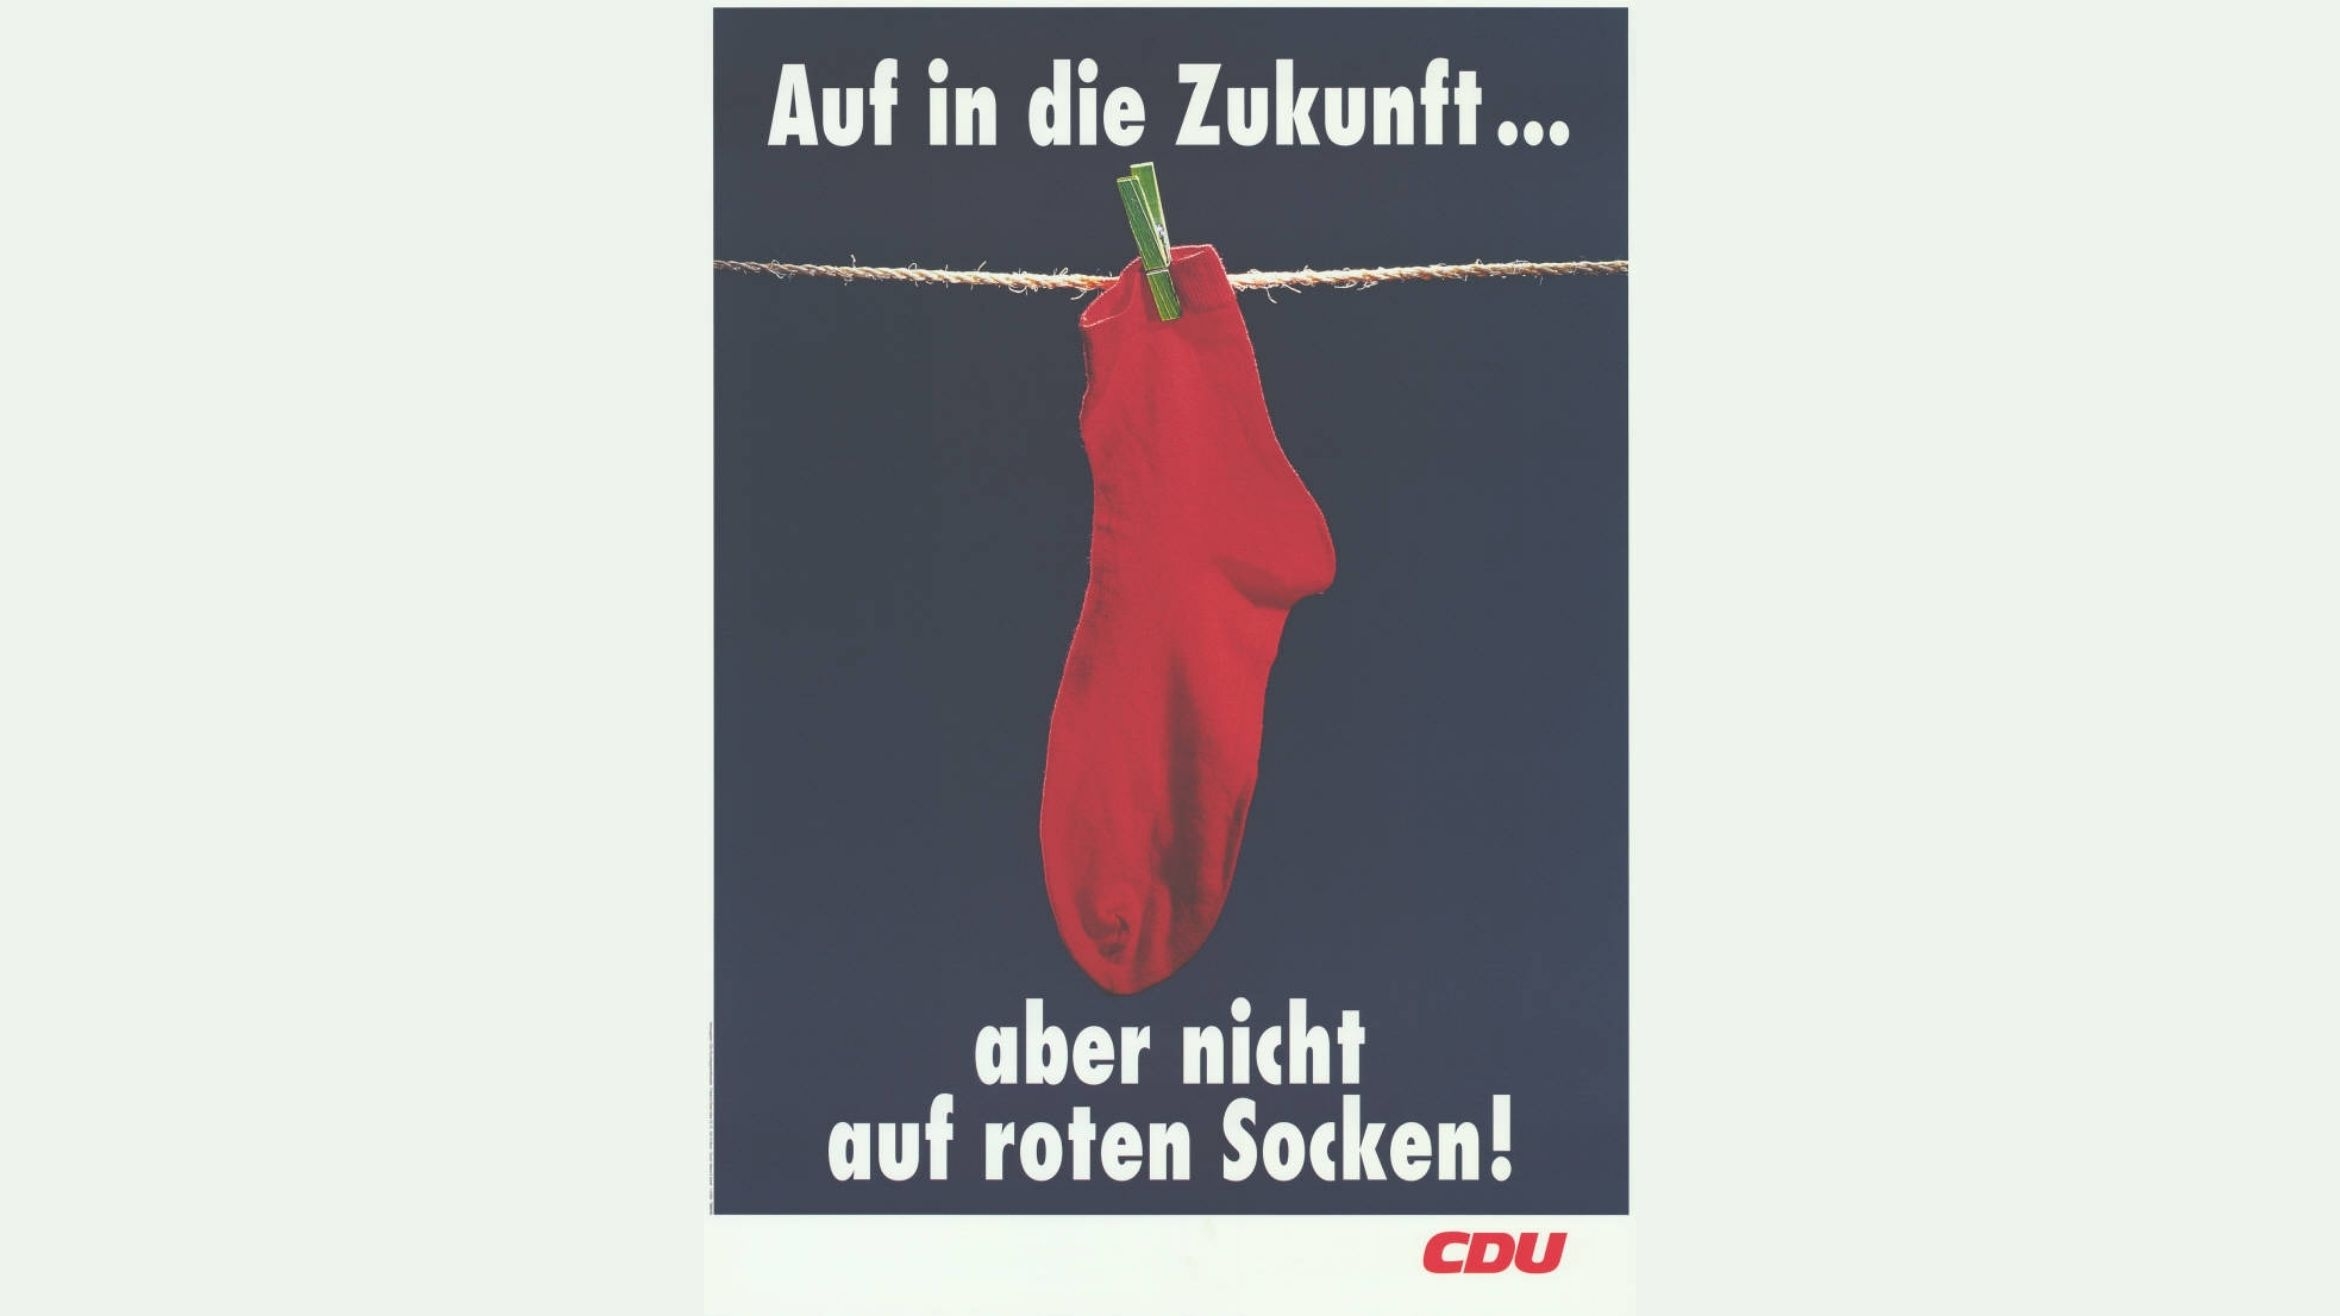 "Rote-Socken-Kampagne" der CDU zum Bundestagswahlkampf 1994 –